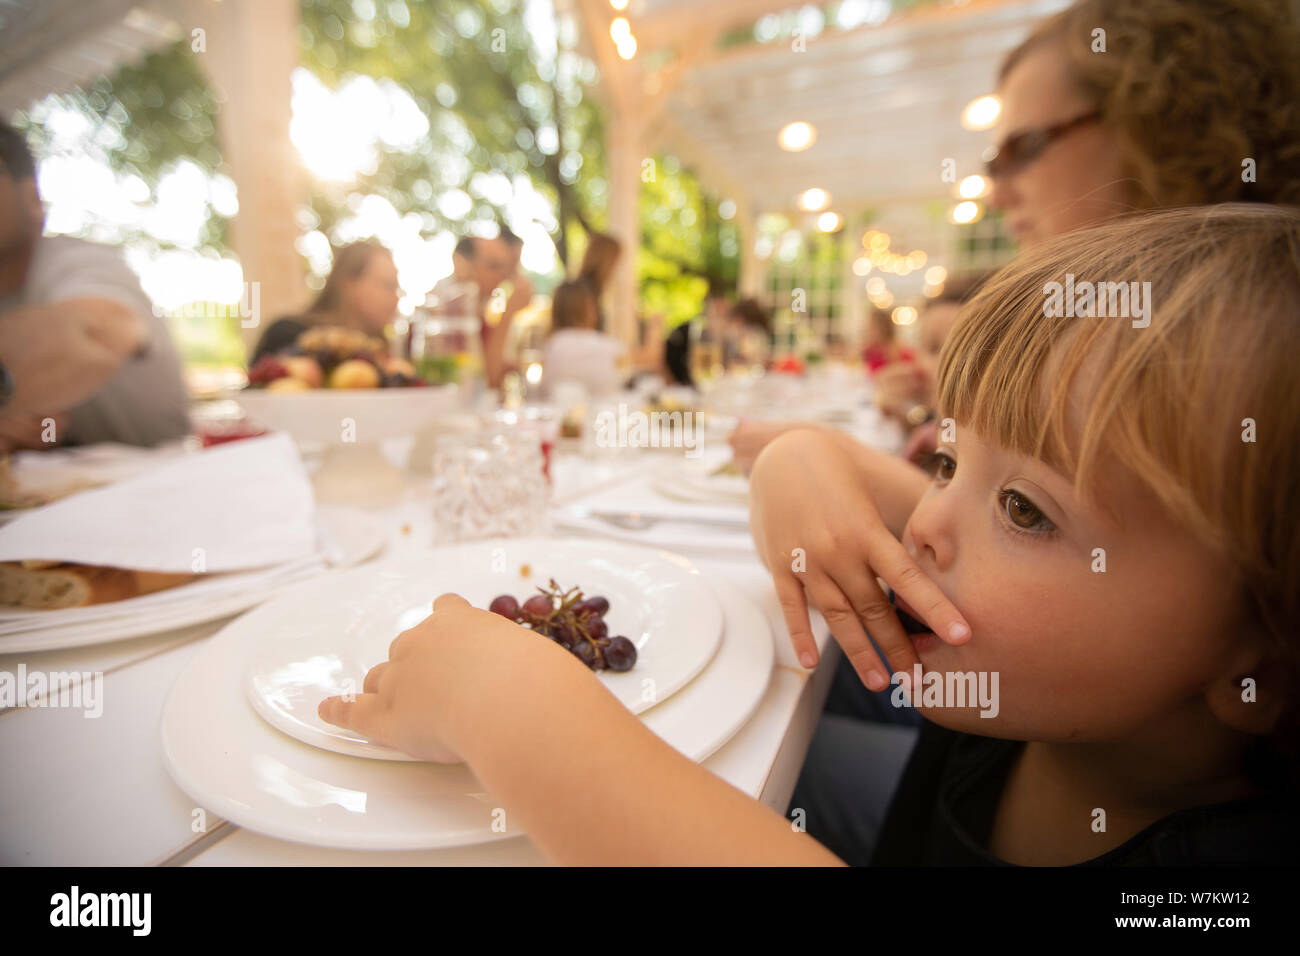 Curiosità kid mangiare uva a tavola nel ristorante esterno Foto Stock